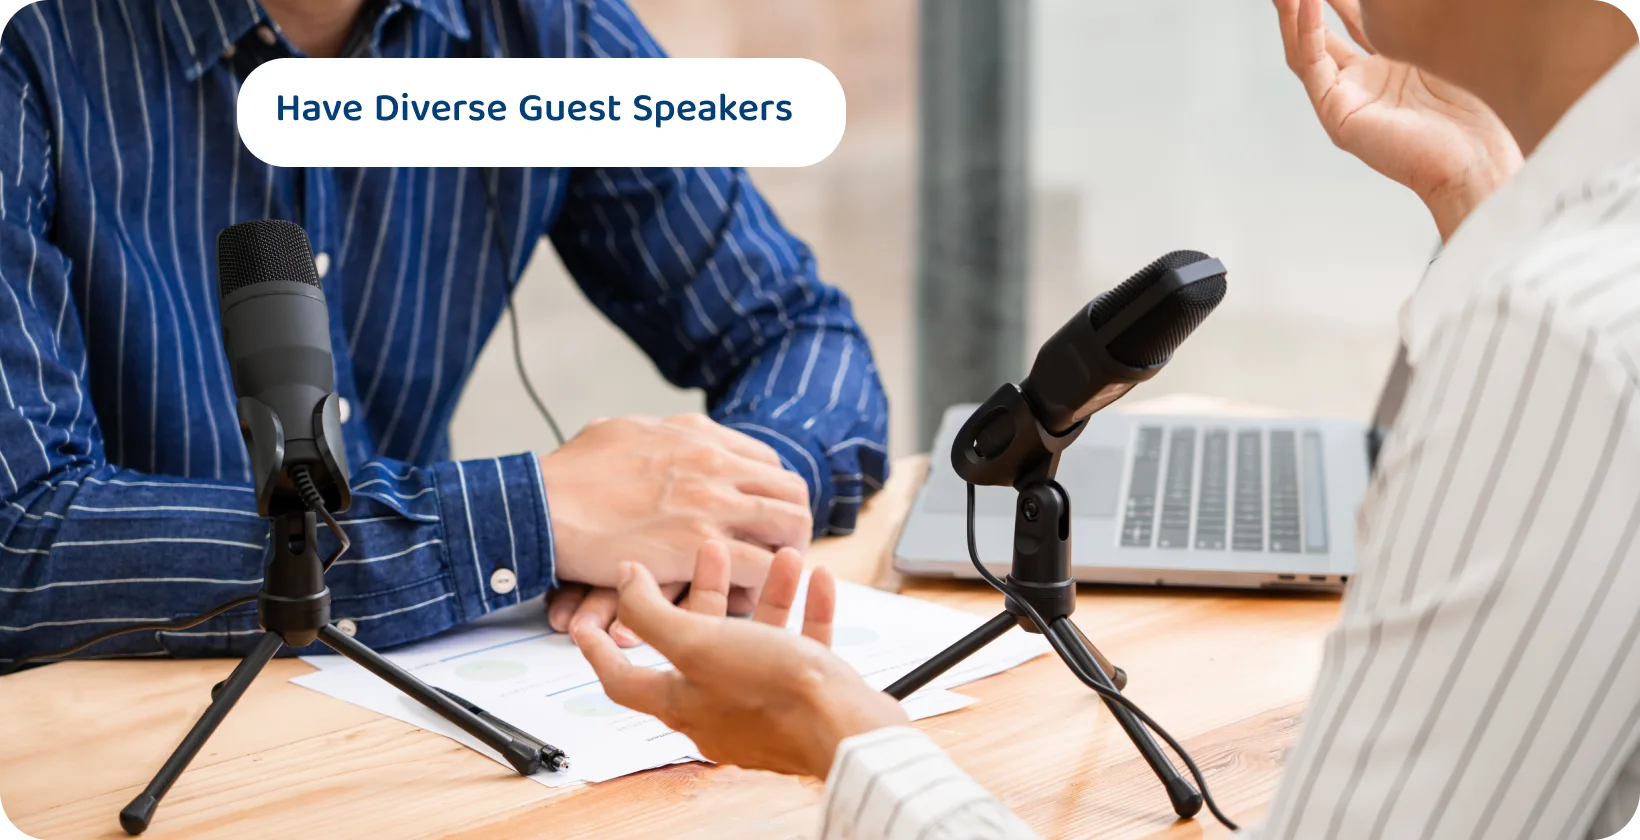 Dua podcaster dengan mikrofon berdiskusi mungkin merupakan kiat konten untuk sesi pembicara tamu yang menarik dan beragam.